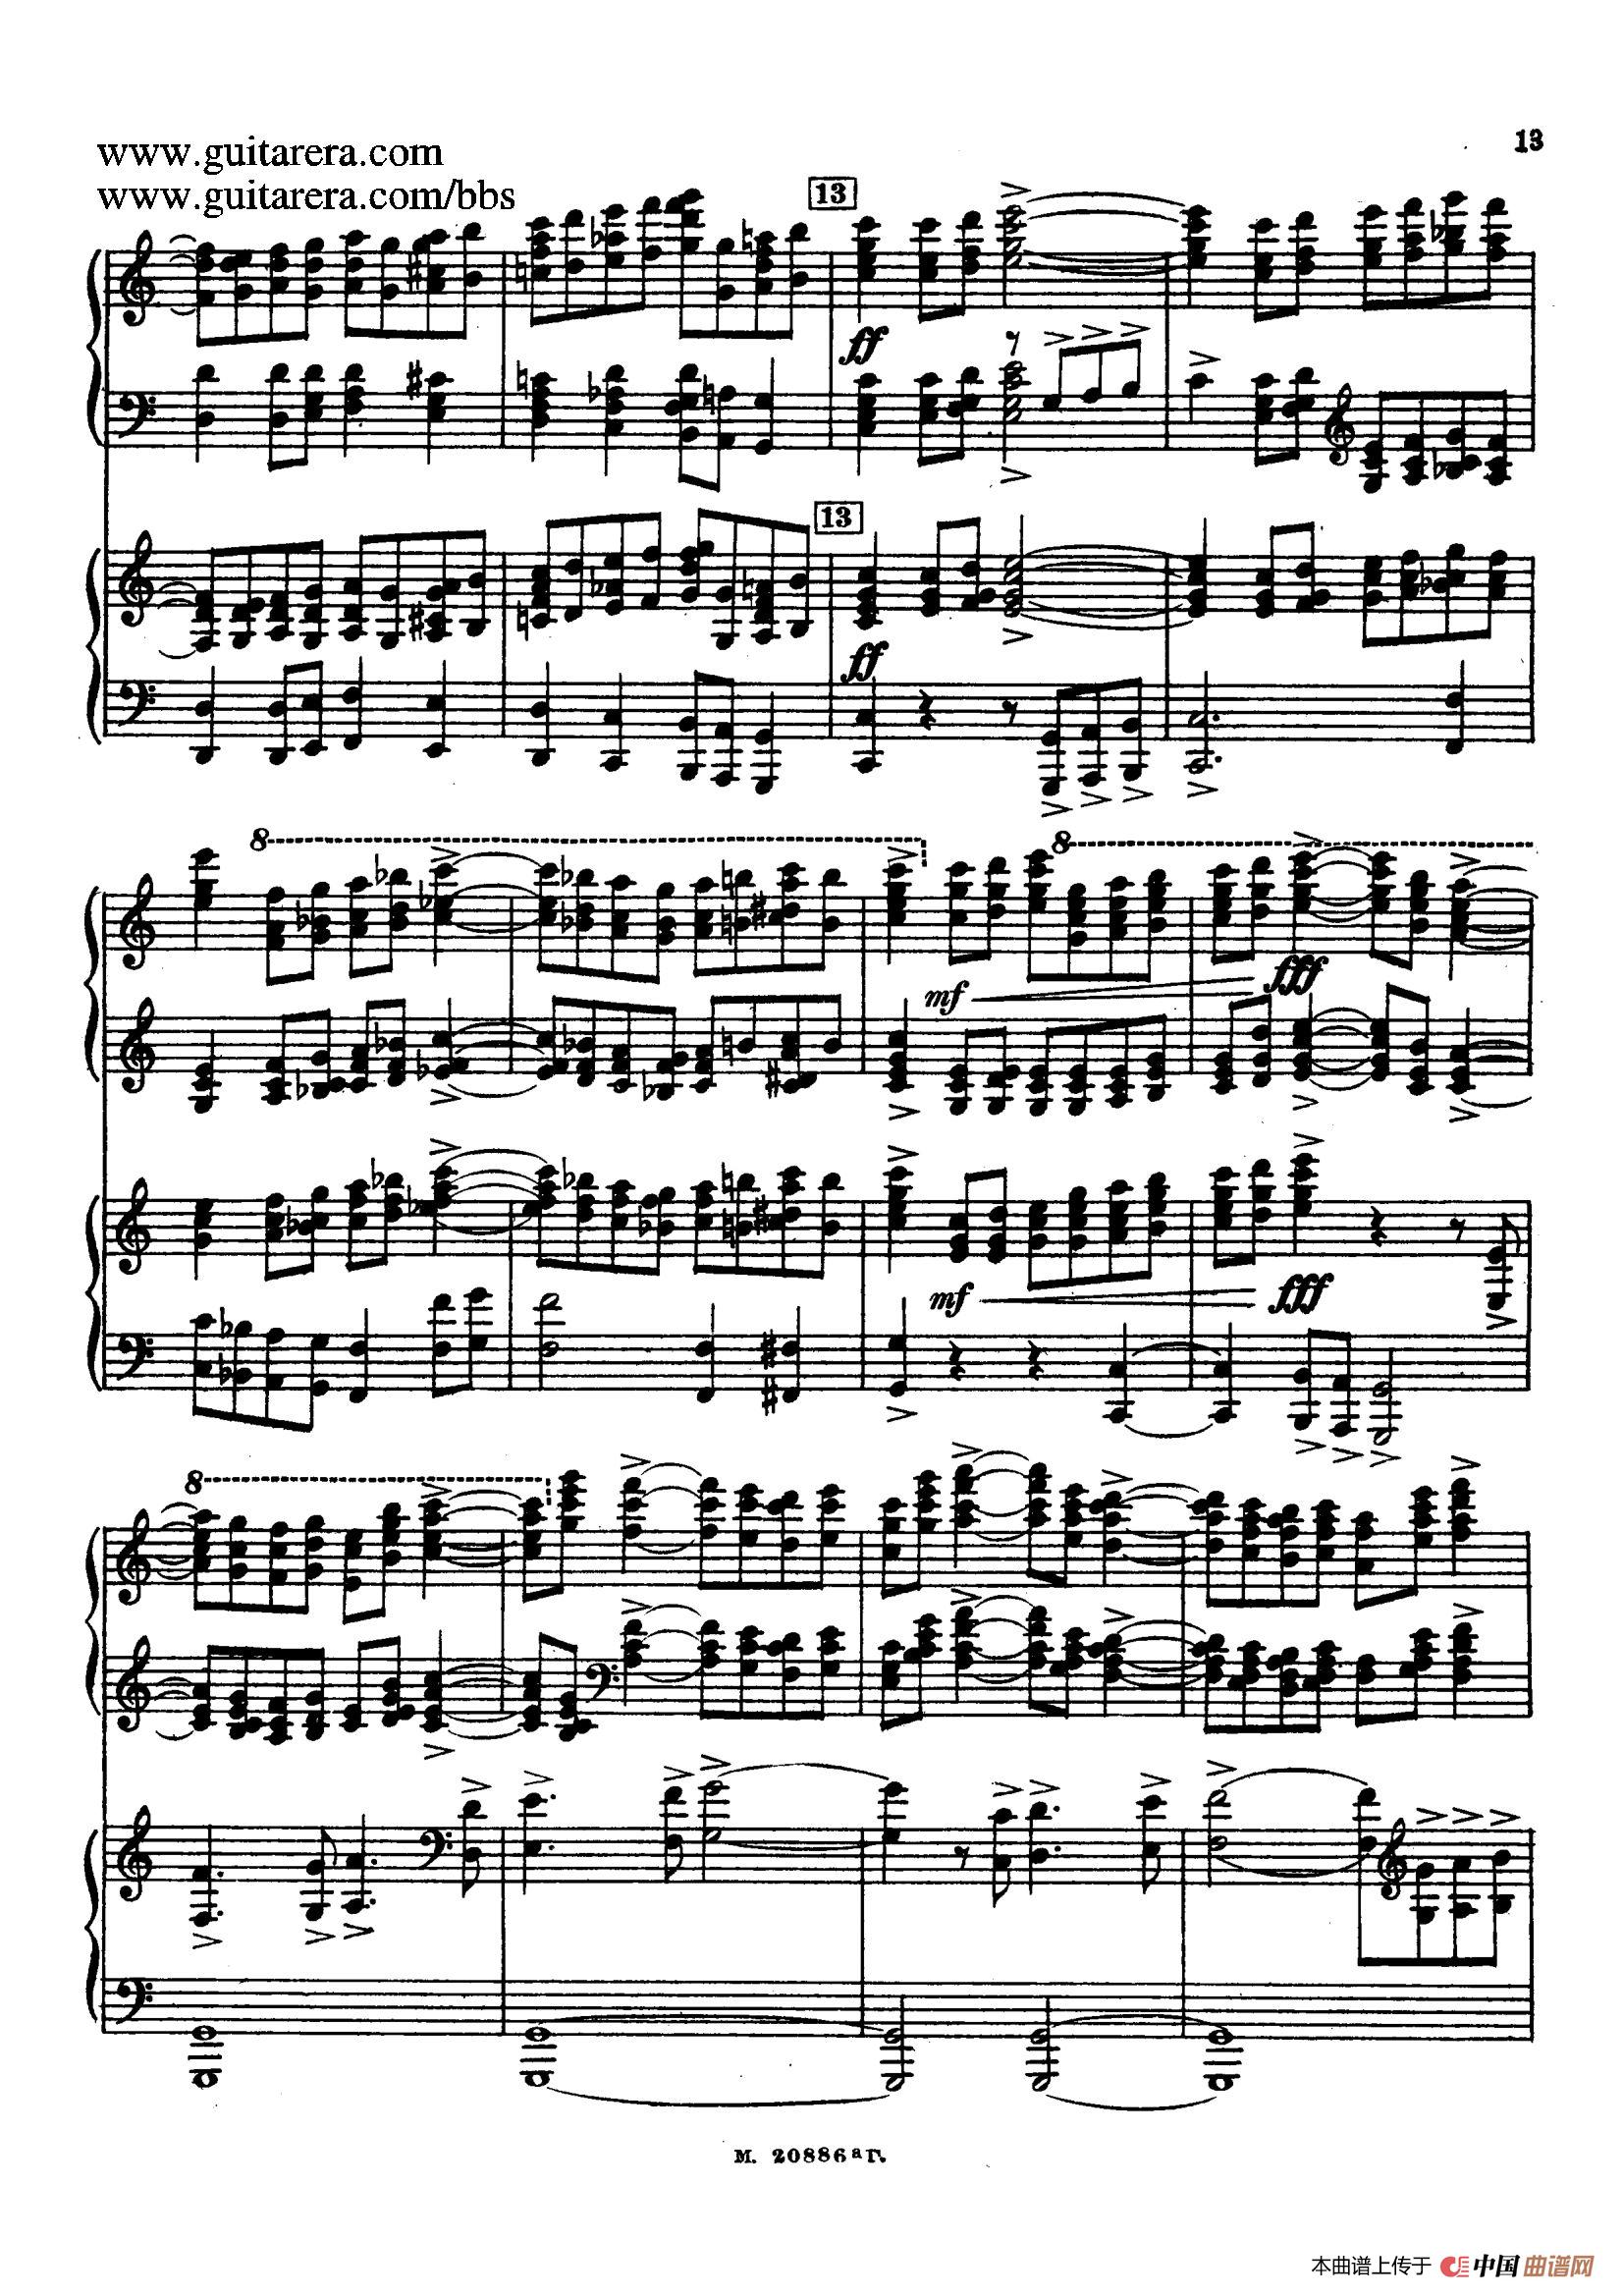 第二双钢琴组曲 Suite for Two Pianos No.2 Op.17（1. 引子